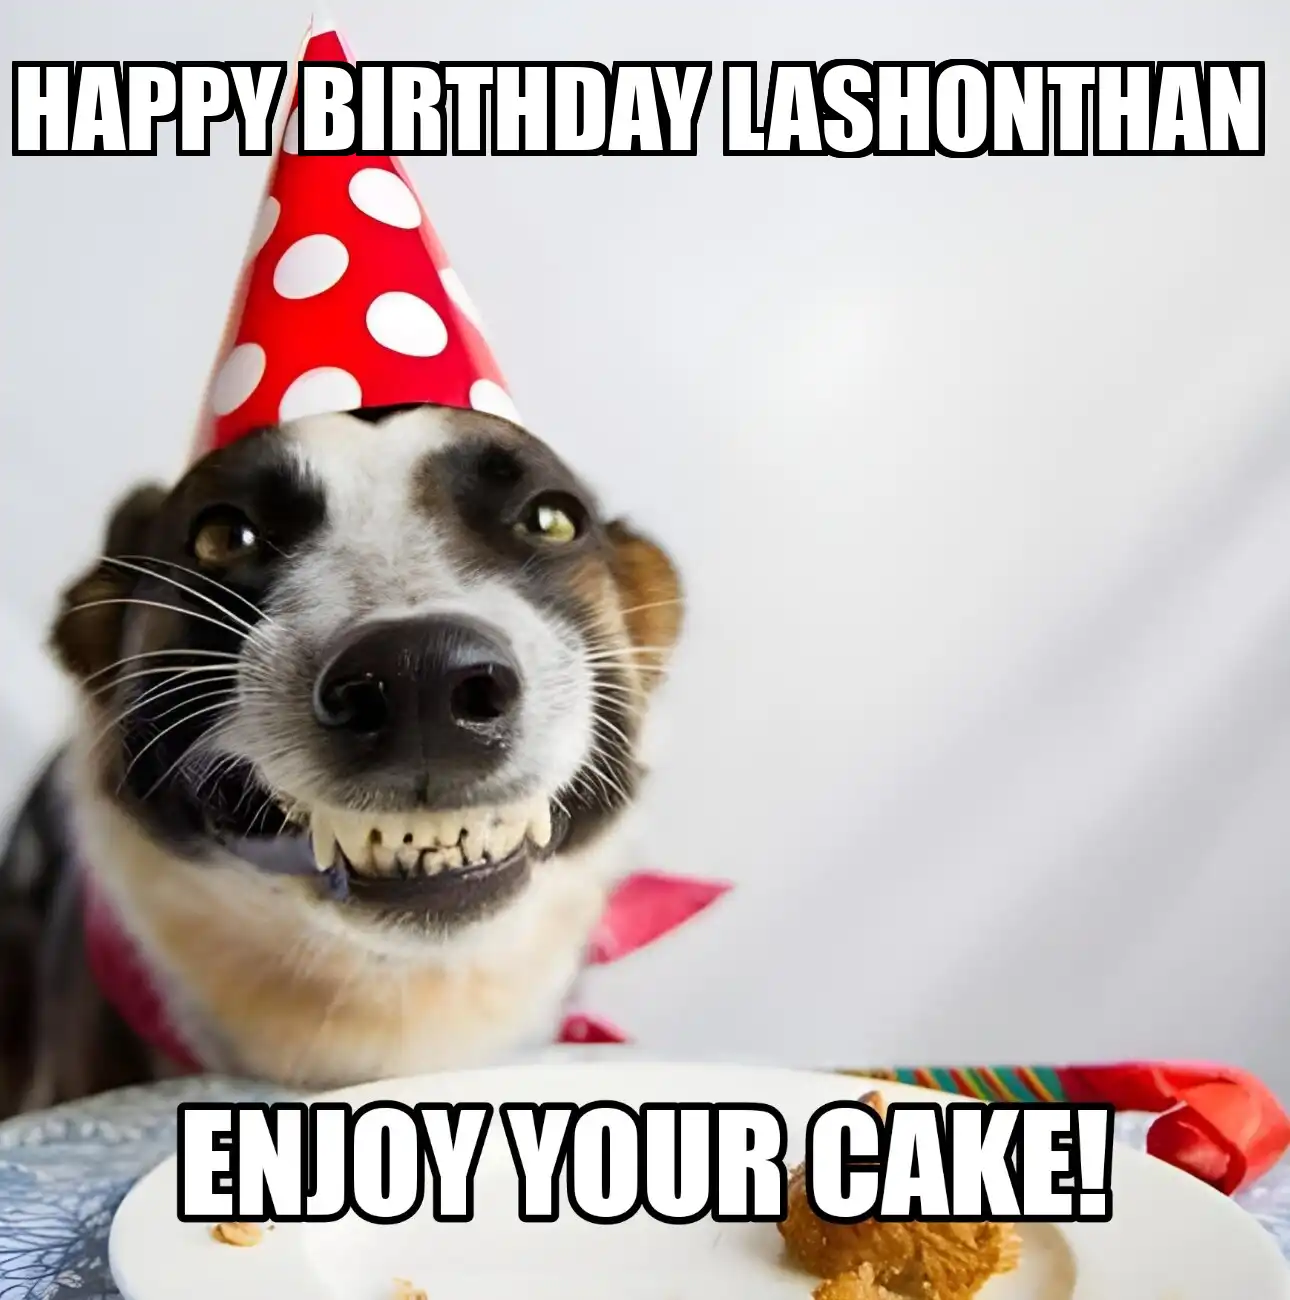 Happy Birthday Lashonthan Enjoy Your Cake Dog Meme